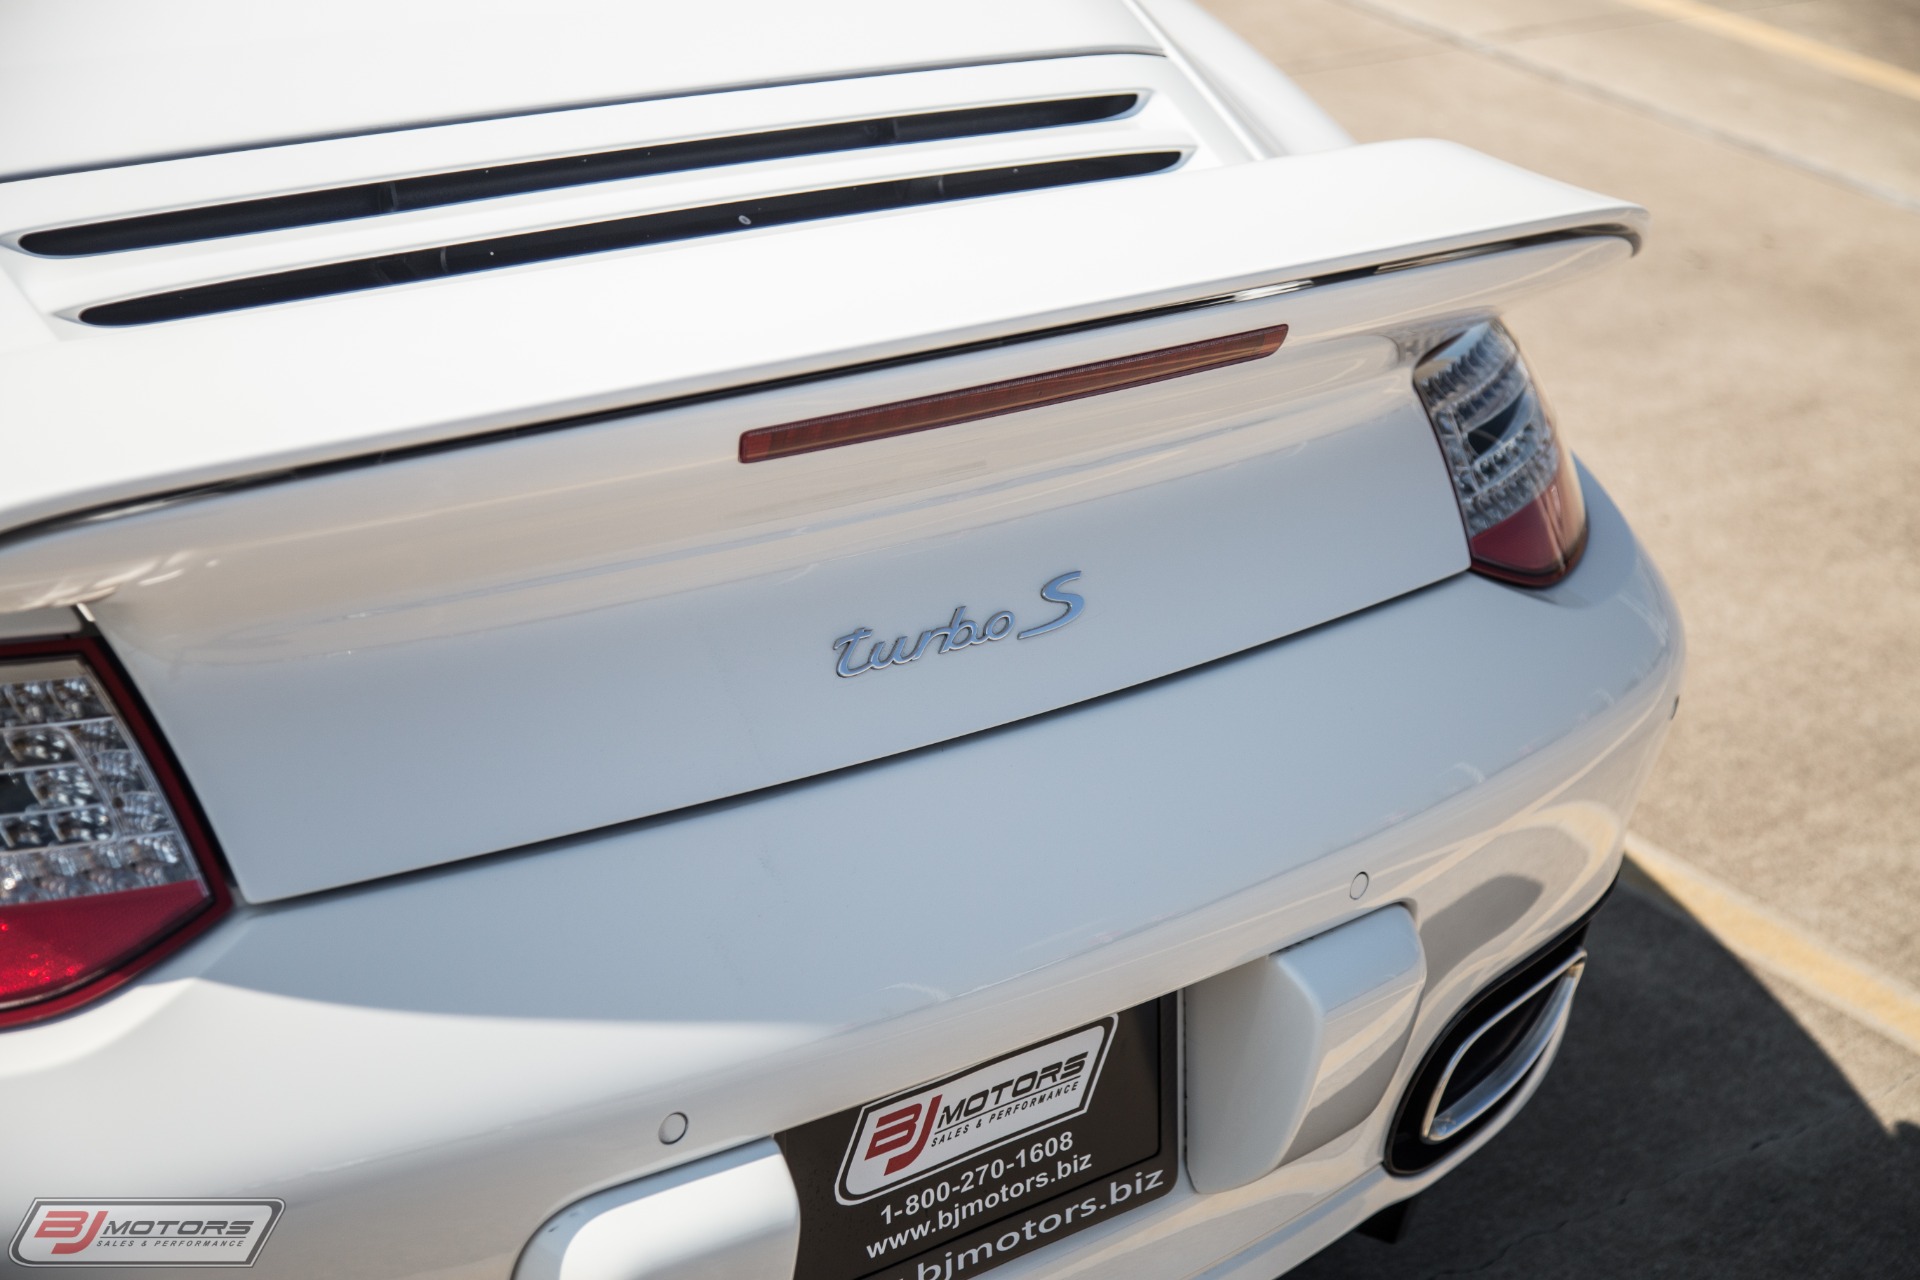 Used-2013-Porsche-911-Turbo-S